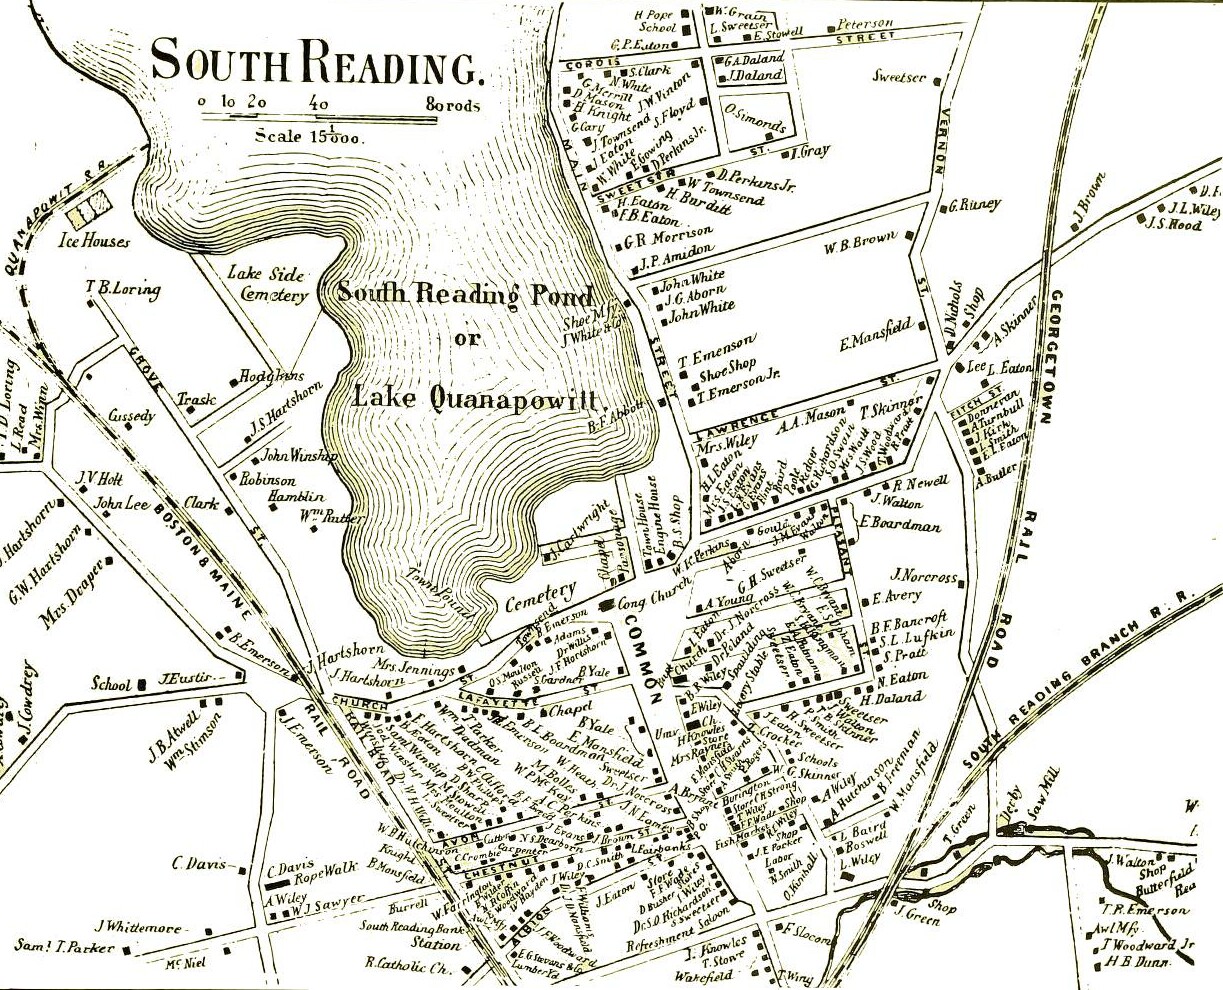 1856 South Reading, Massachusetts